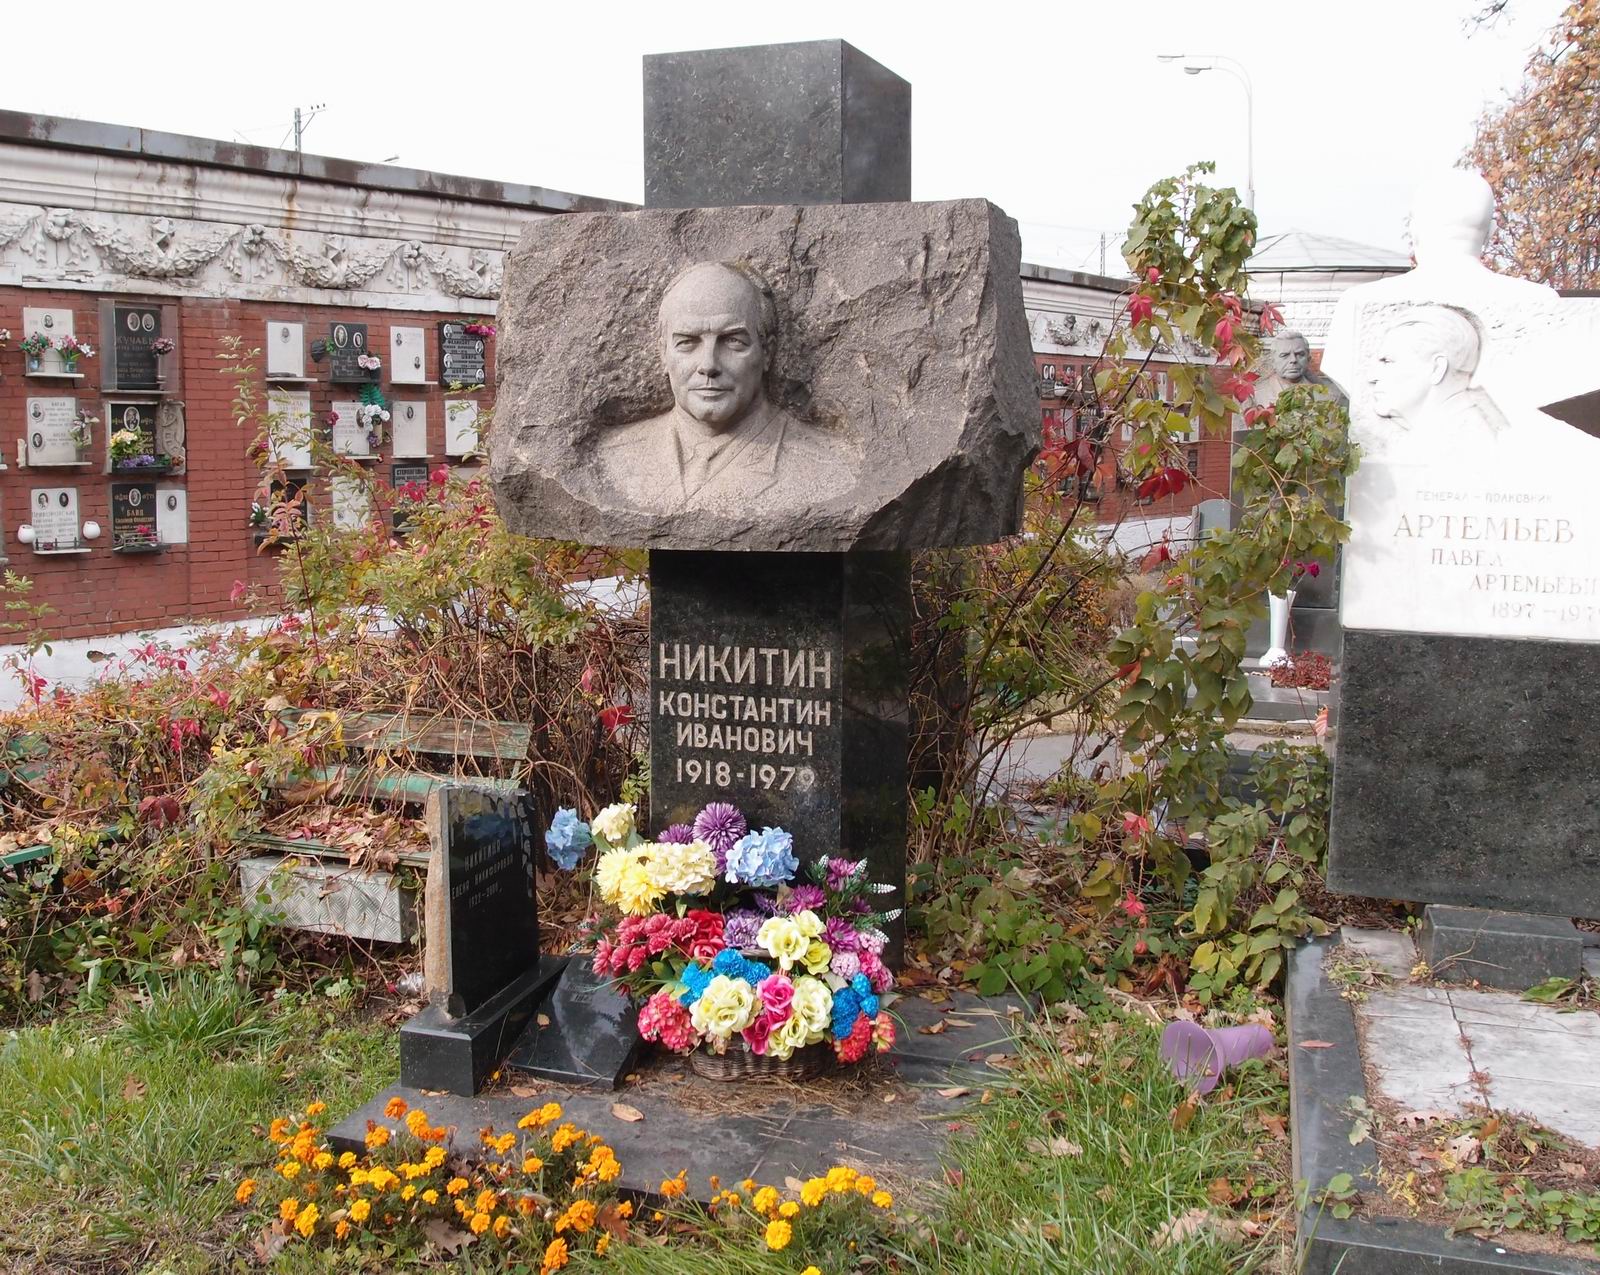 Памятник на могиле Никитина К.И. (1918-1979), ск. А.Бычуков, арх. Е.Кутырев, на Новодевичьем кладбище (7-15-18).